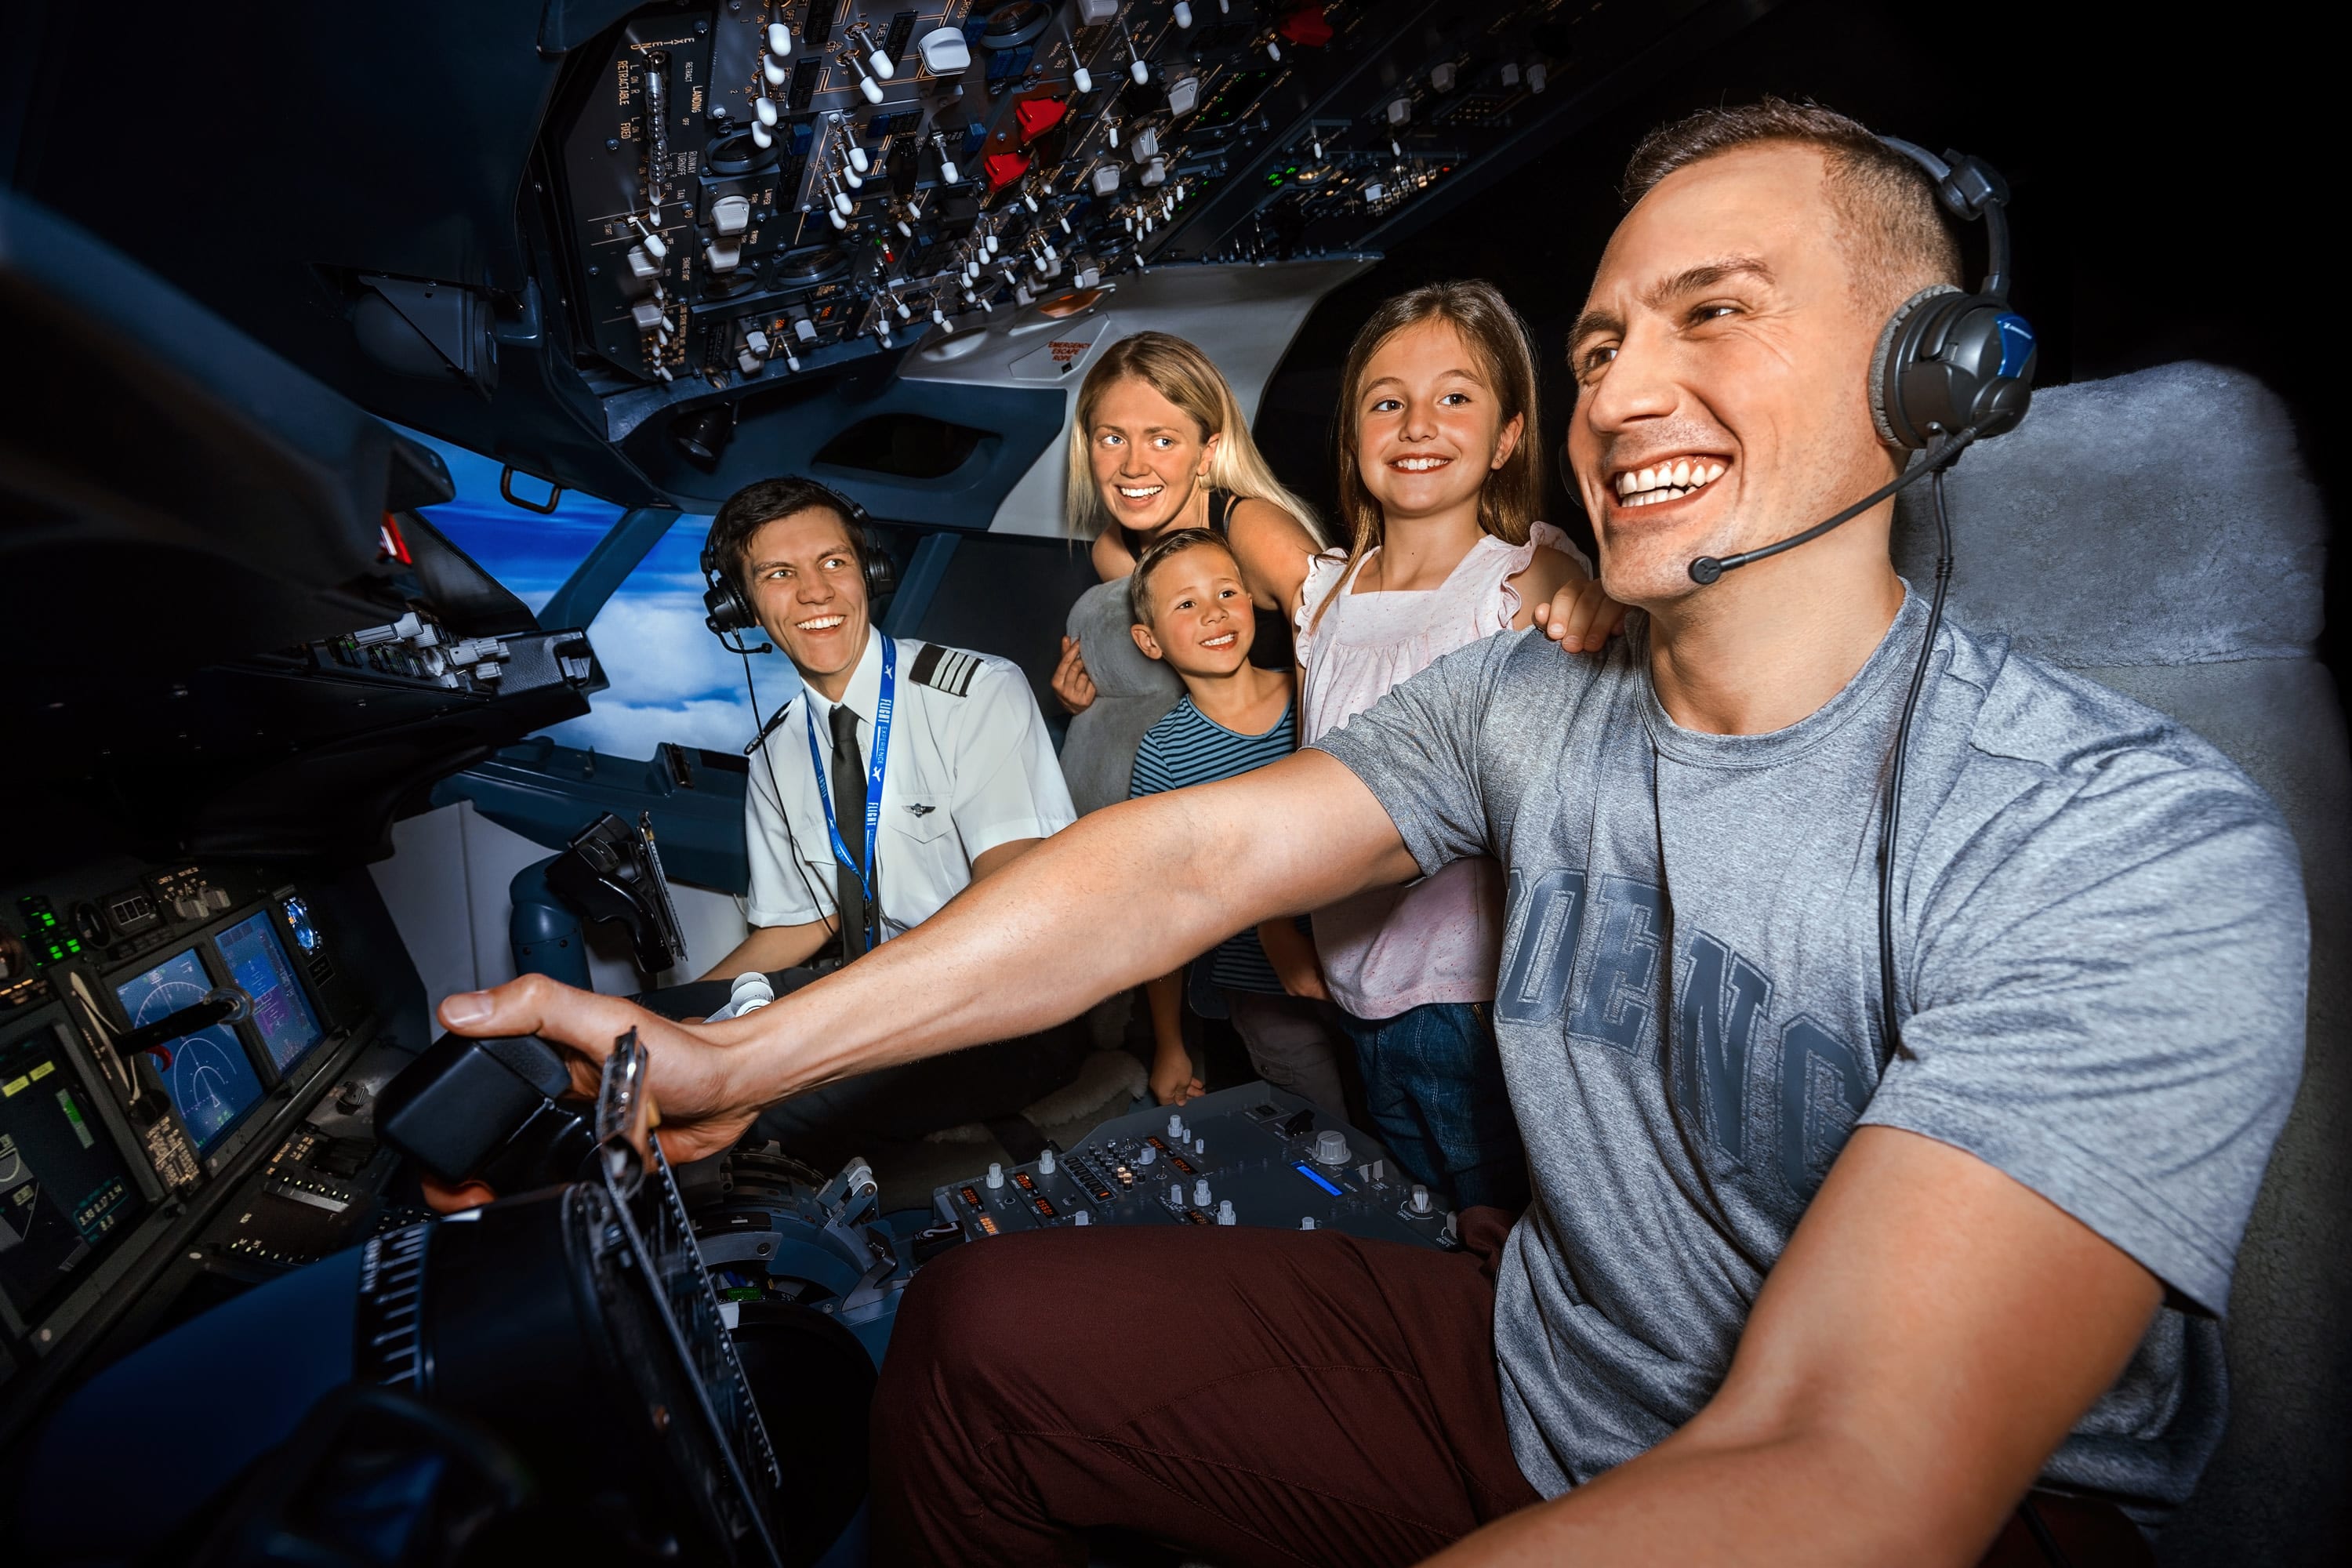 Boeing 737 Flight Simulator, 45 Minutes - Melbourne CBD